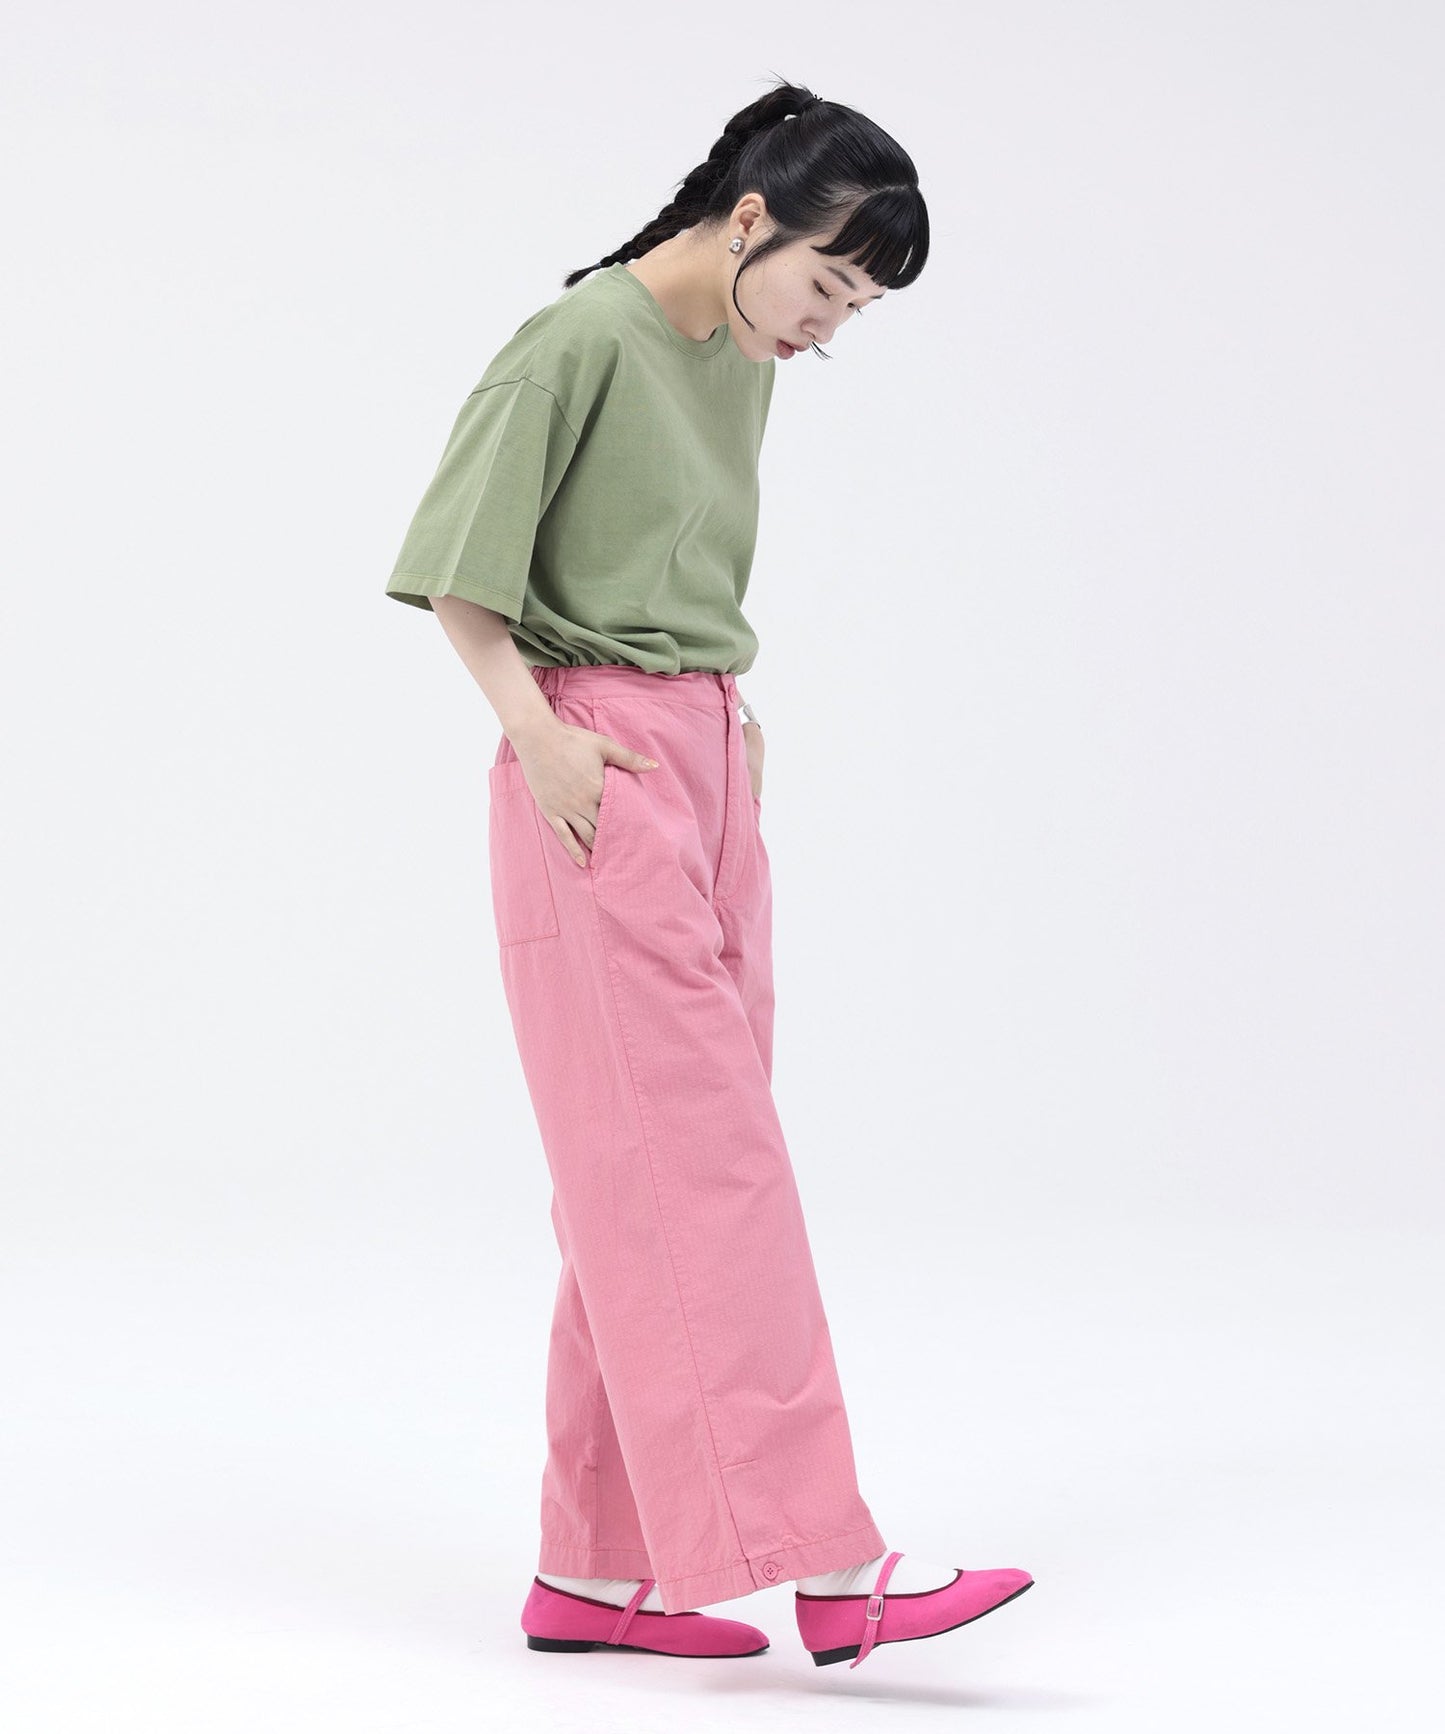 【環保材質】OG GD COTTON TEE SOLID 有機棉 寬鬆型【145-175cm】